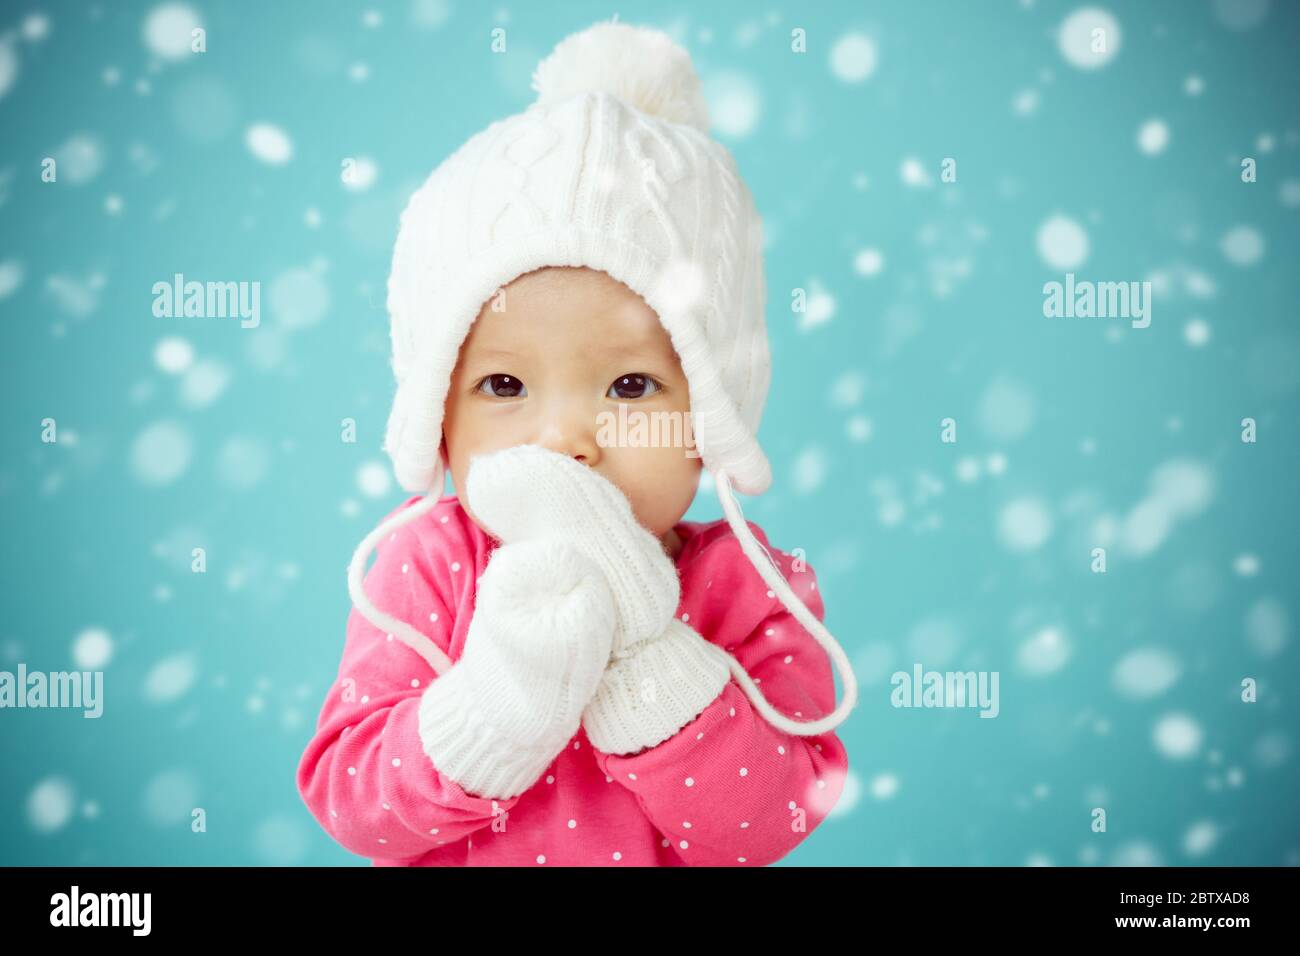 Bébé avec chapeau de coolé blanc et moufles tricotées avec chute de neige Banque D'Images